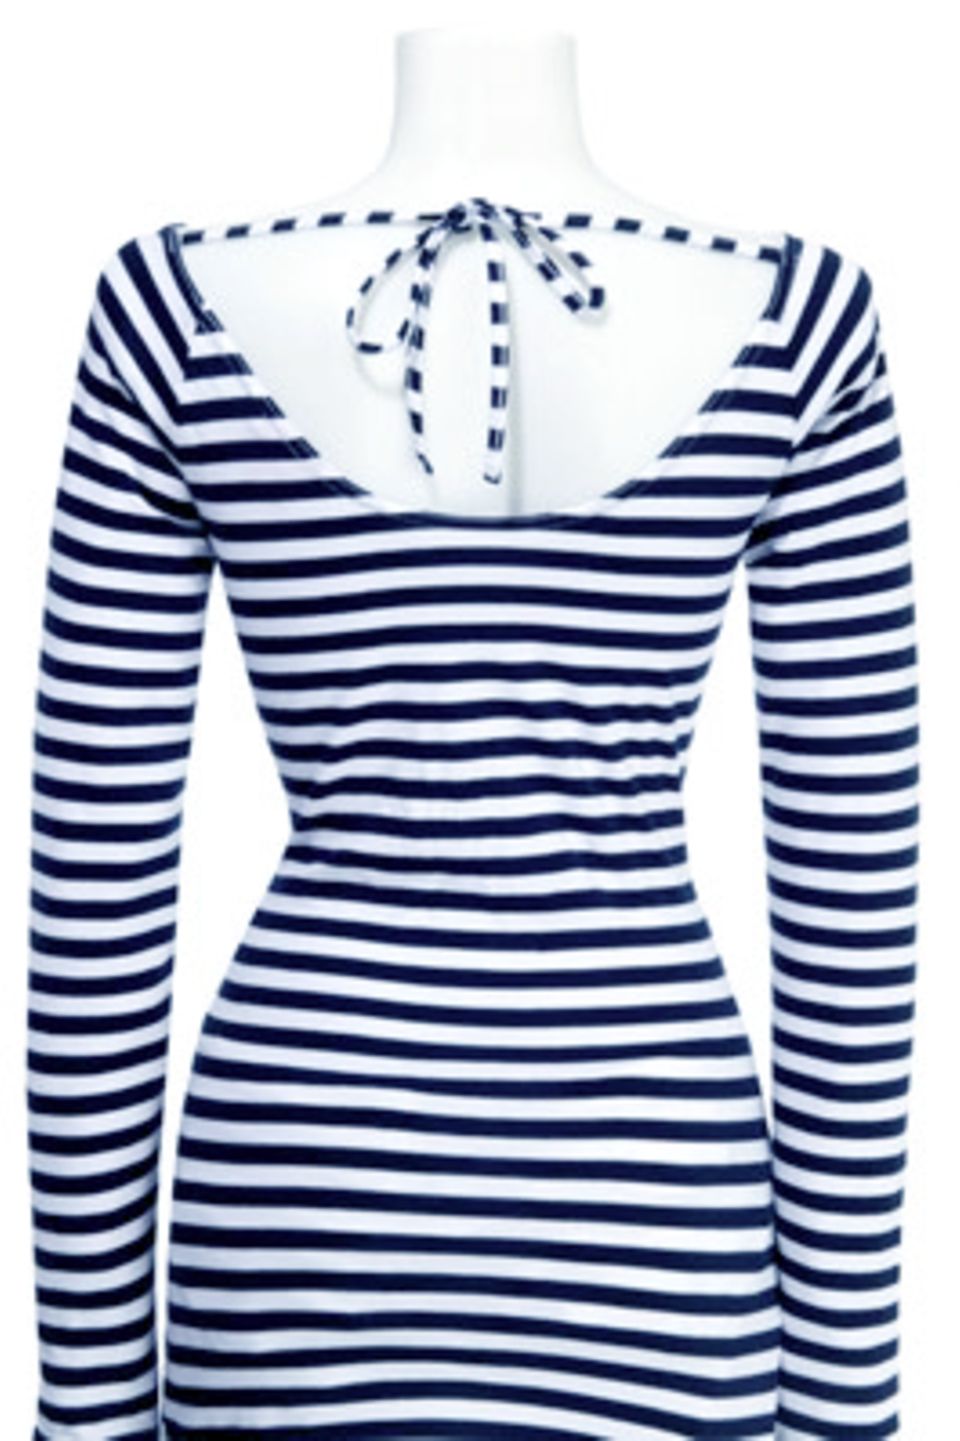 Blau-weiß gestreiftes Shirt; 14,99 €Euro; von K&L Ruppert